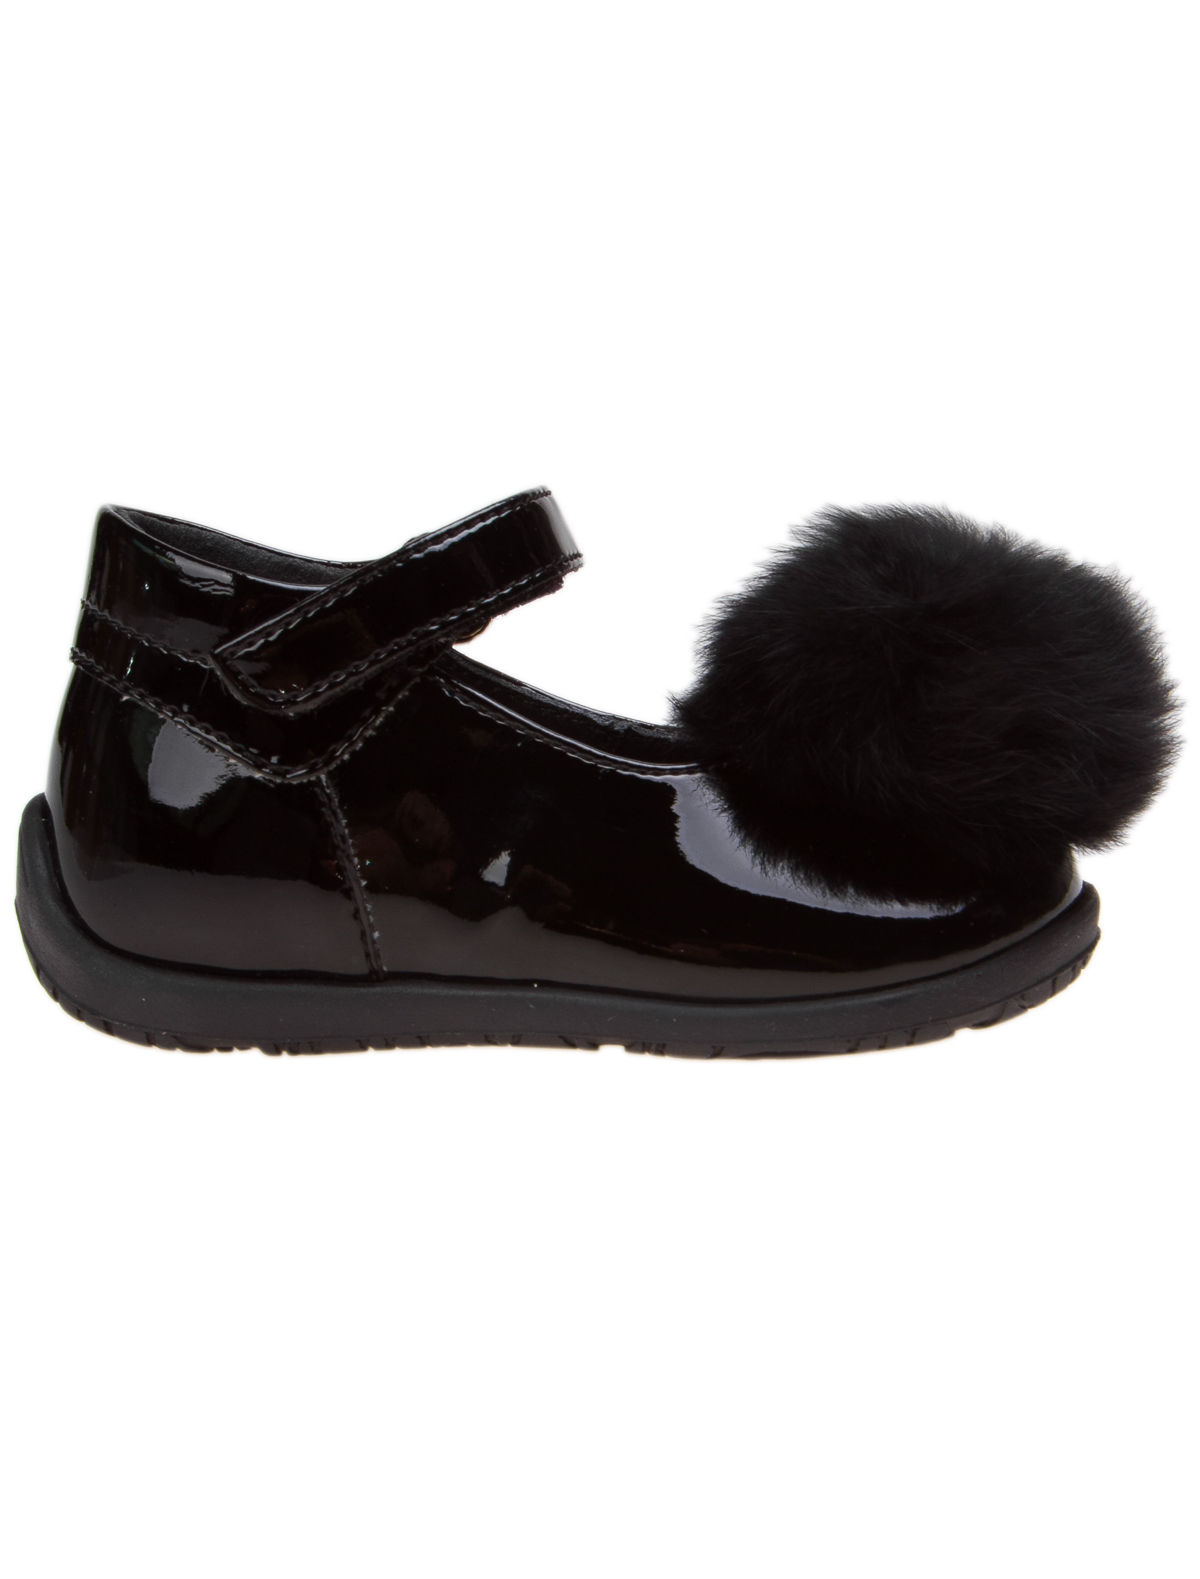 Туфли Florens 1912879, цвет черный, размер 18 2011109780098 - фото 2